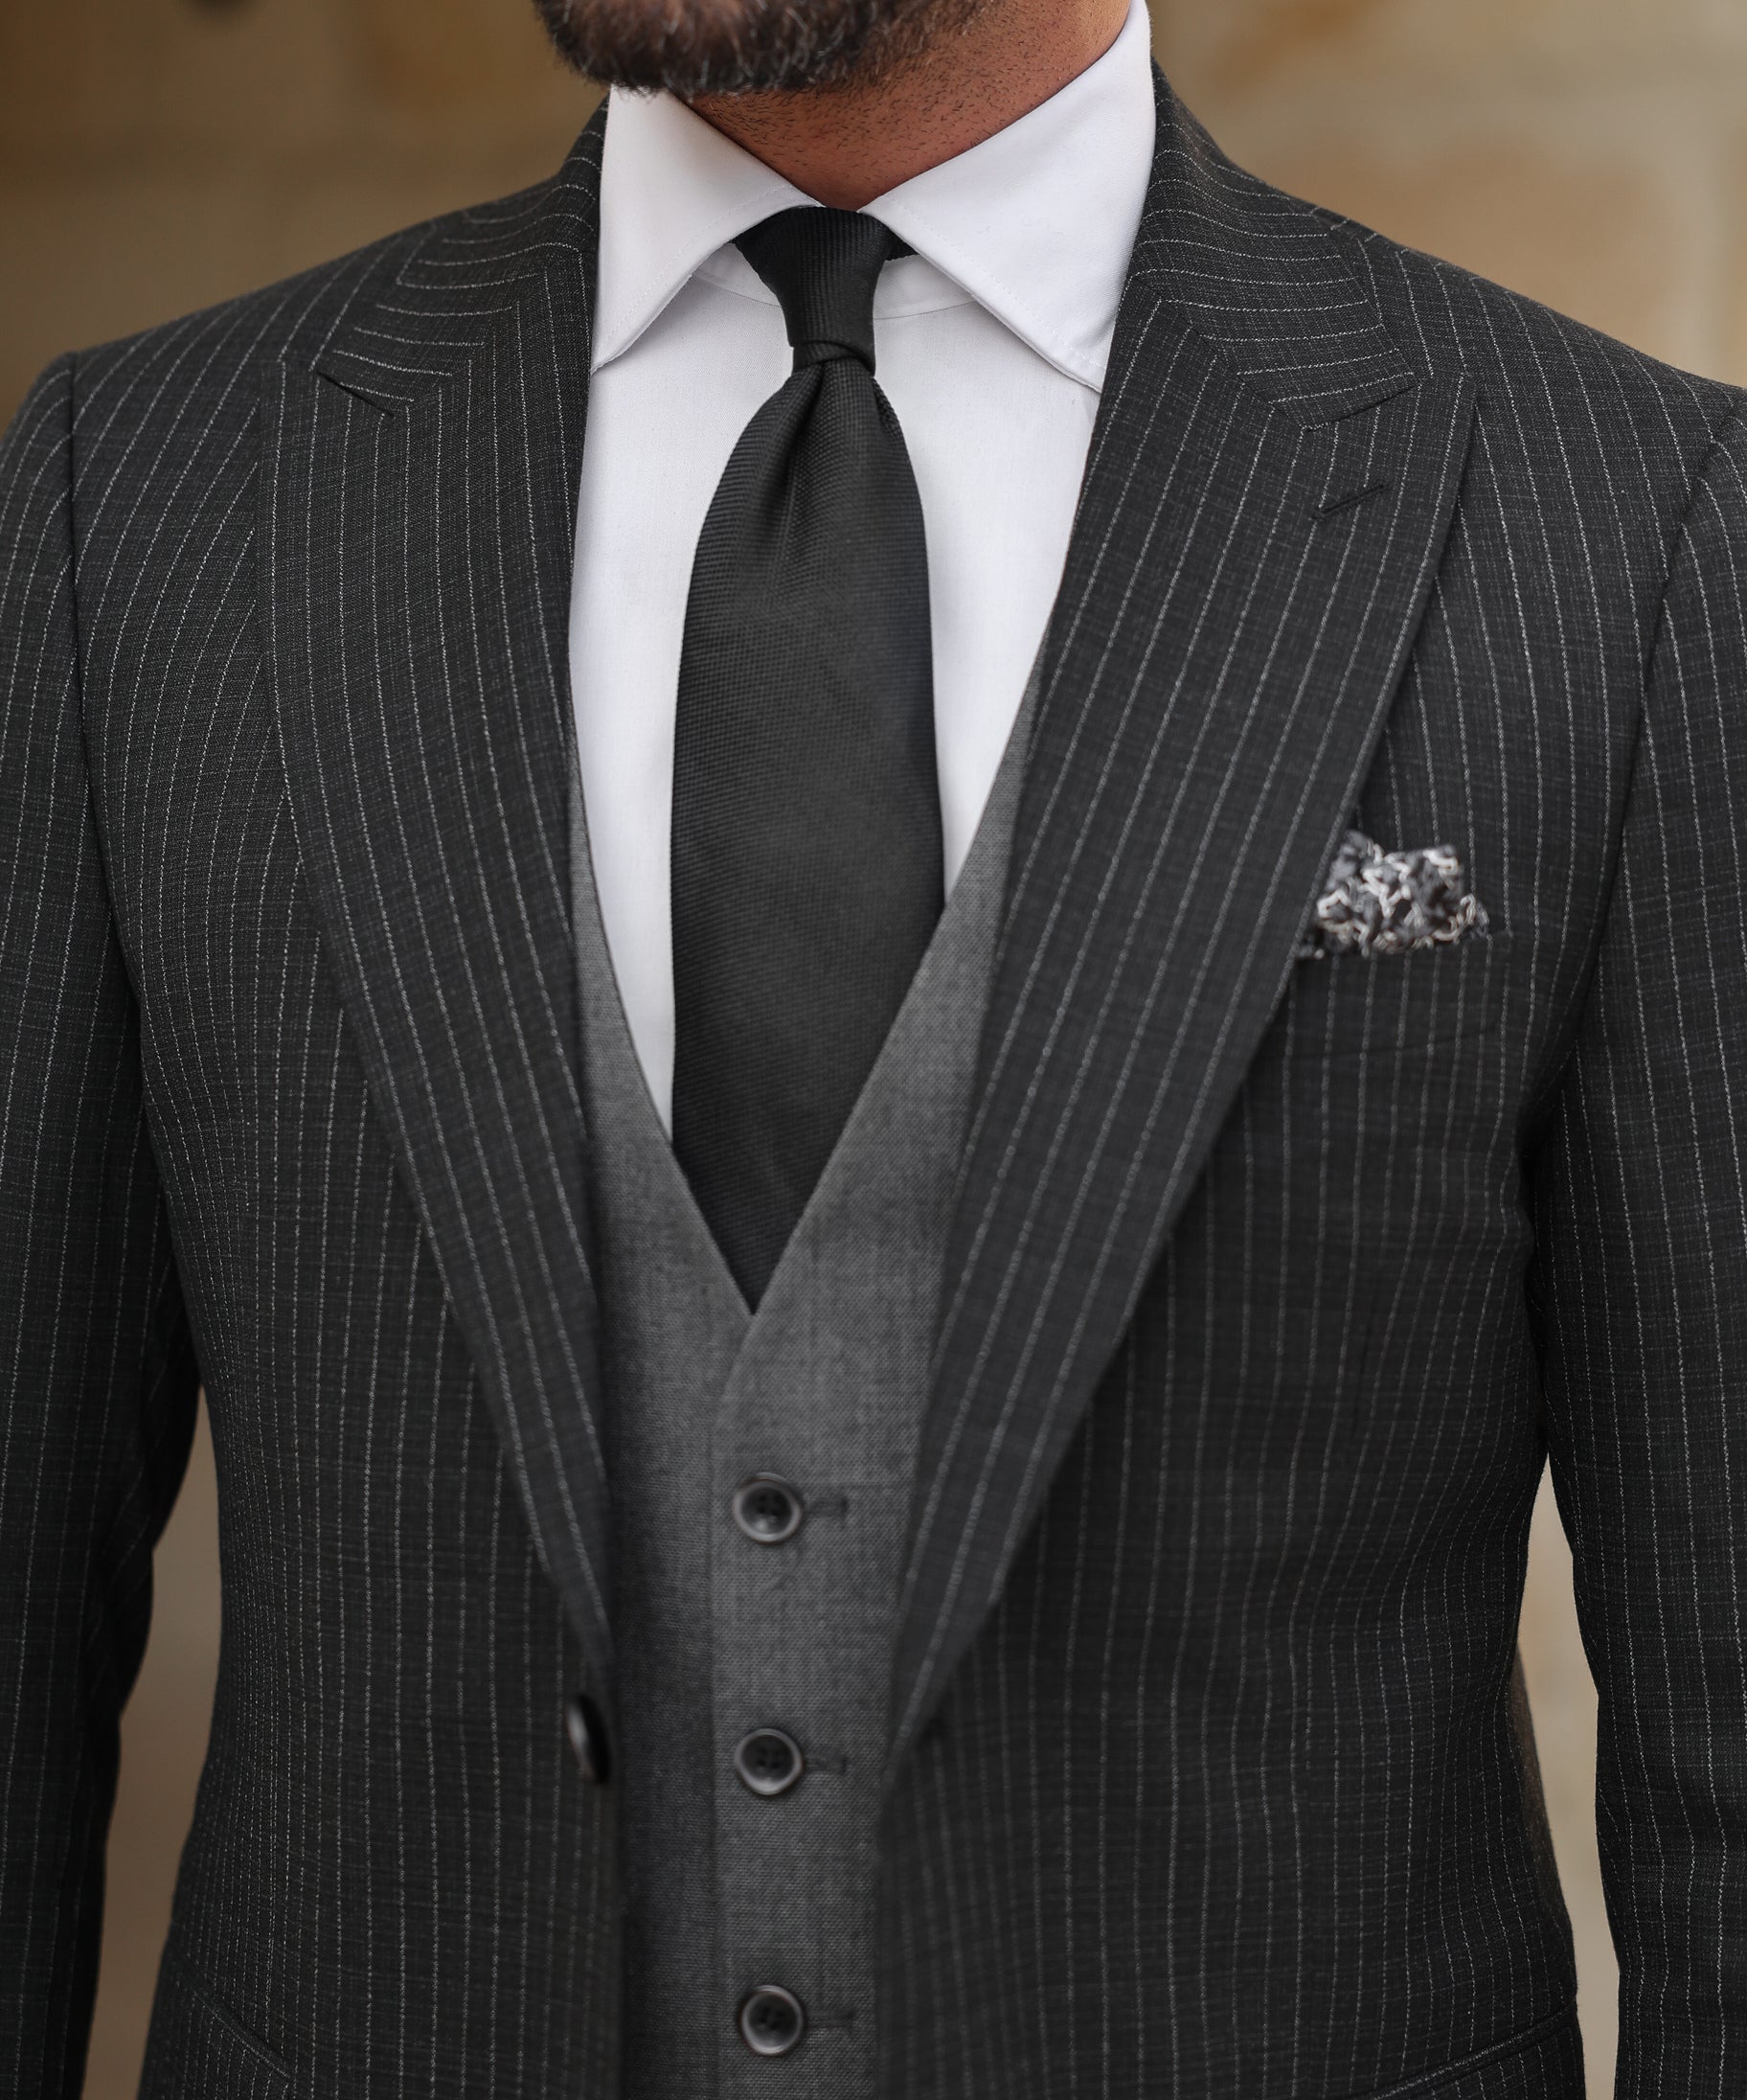 Black Double-Sided Vest Suit 3-Piece